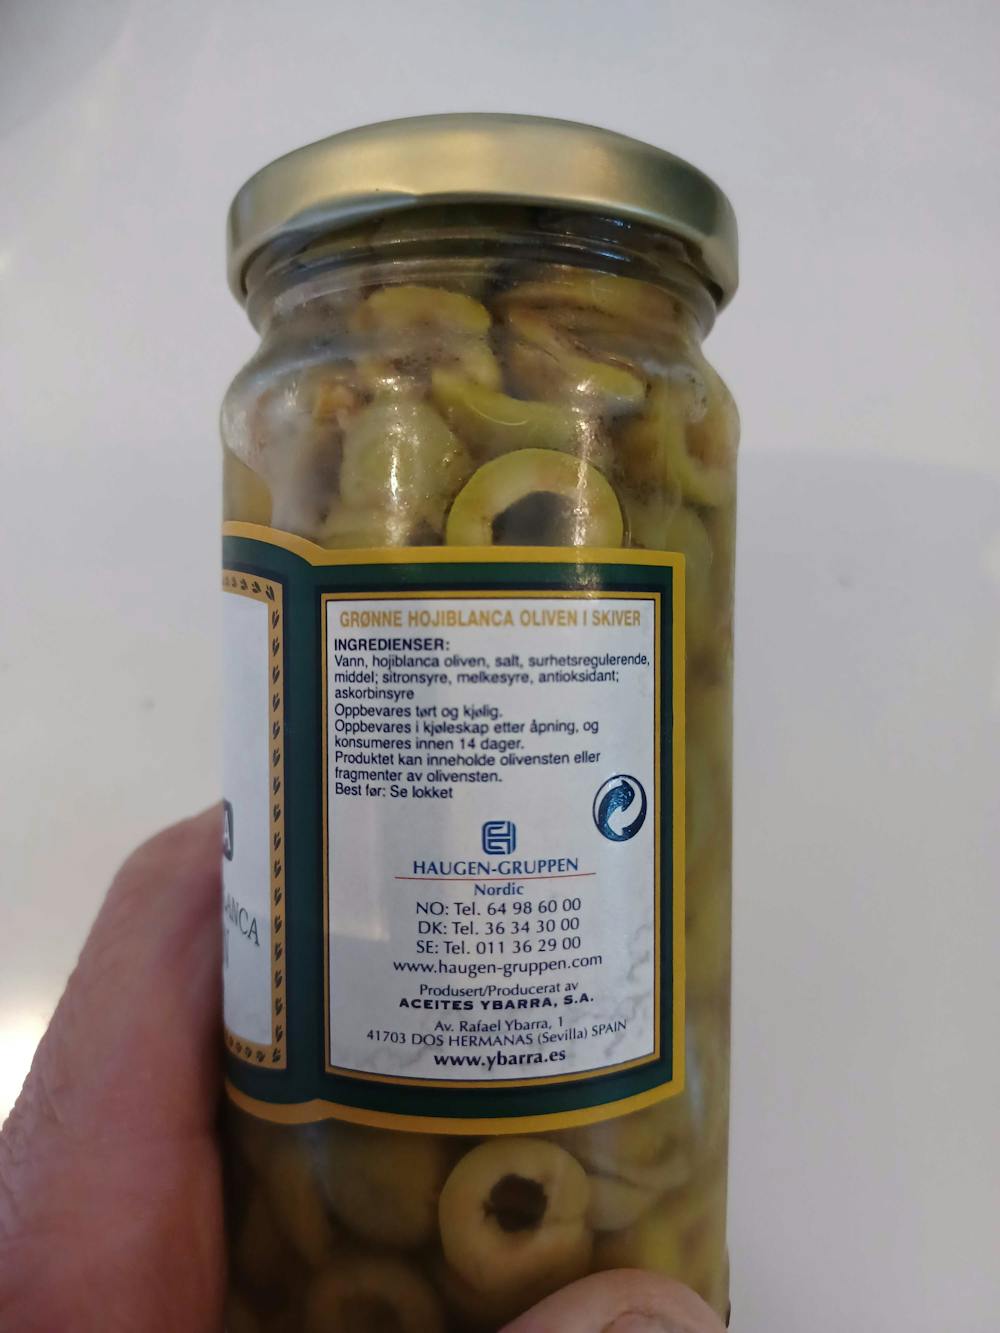 Ingredienslisten til Grønne hojablanca oliven, i skiver, Ybarra